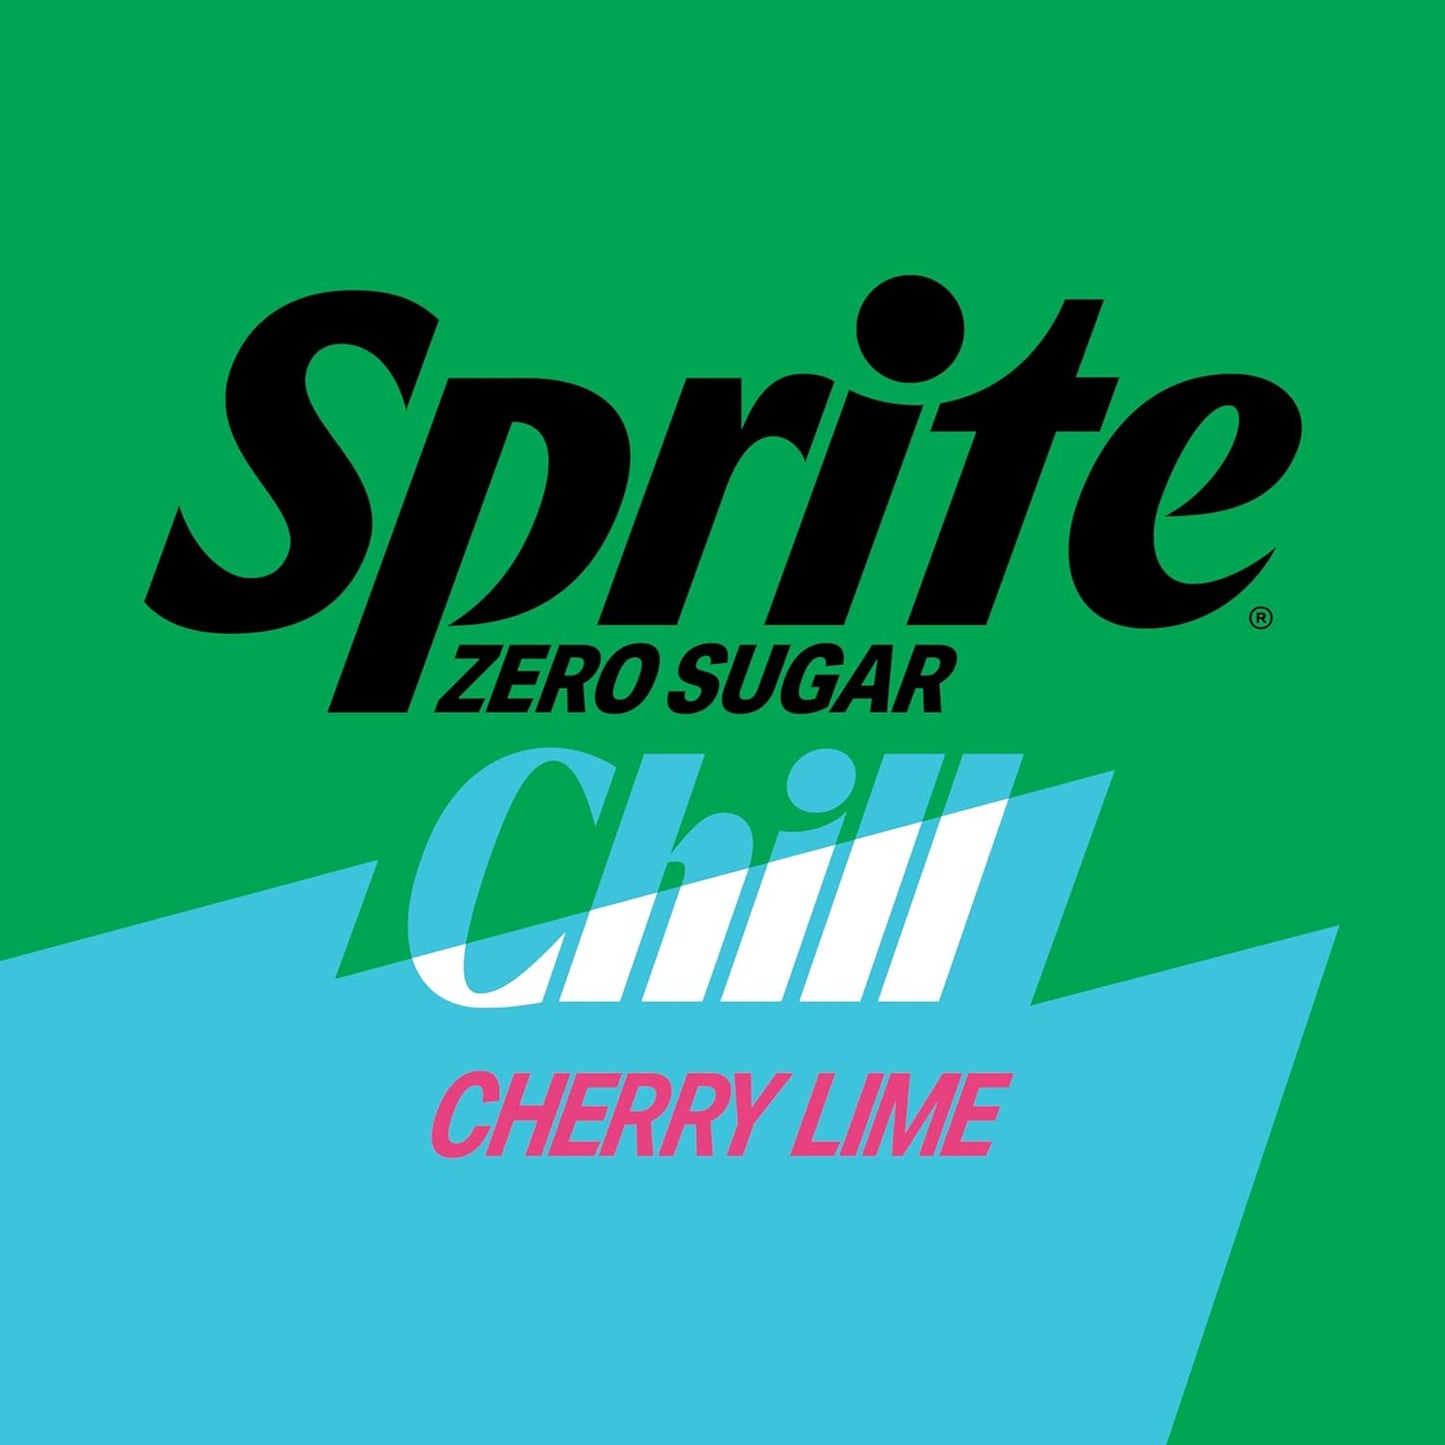 Sprite Zero Sugar Chill Cherry Lime 12oz 12pk - LIMITED EDITION -  PRE ORDER